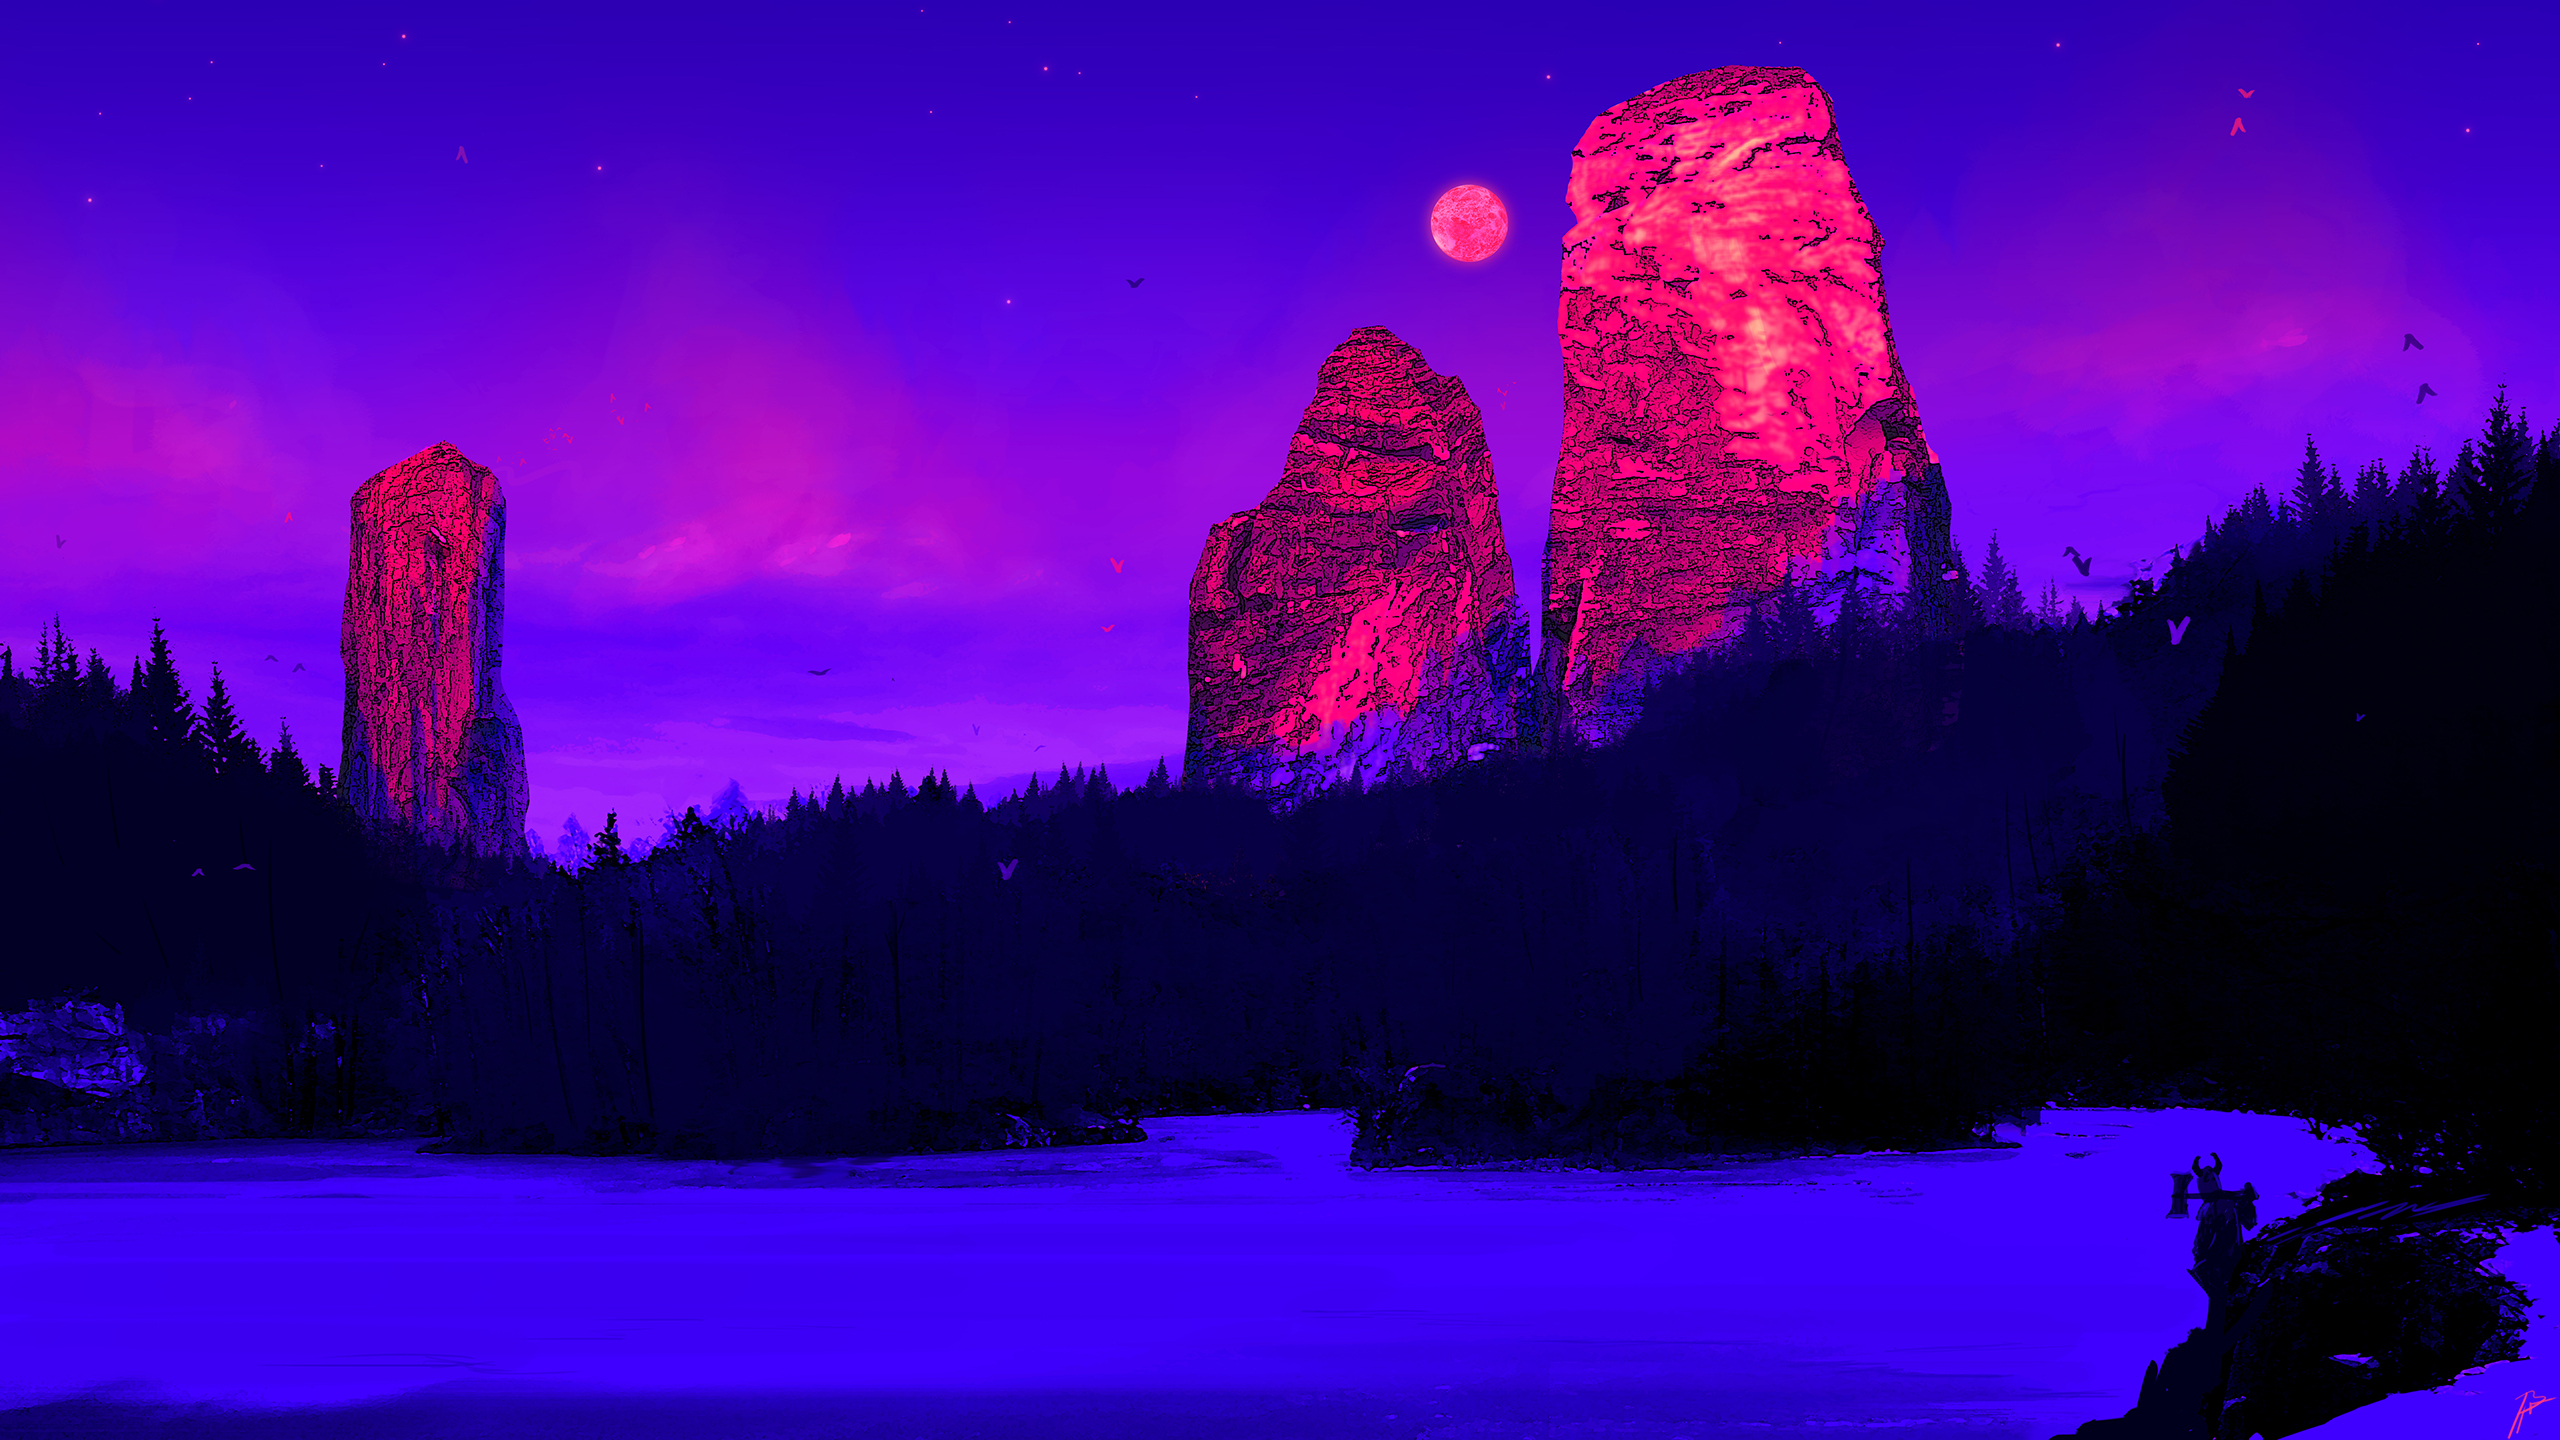 General 2560x1440 JoeyJazz landscape winter fantasy art DeviantArt digital art artwork cold rocks rock formation Moon